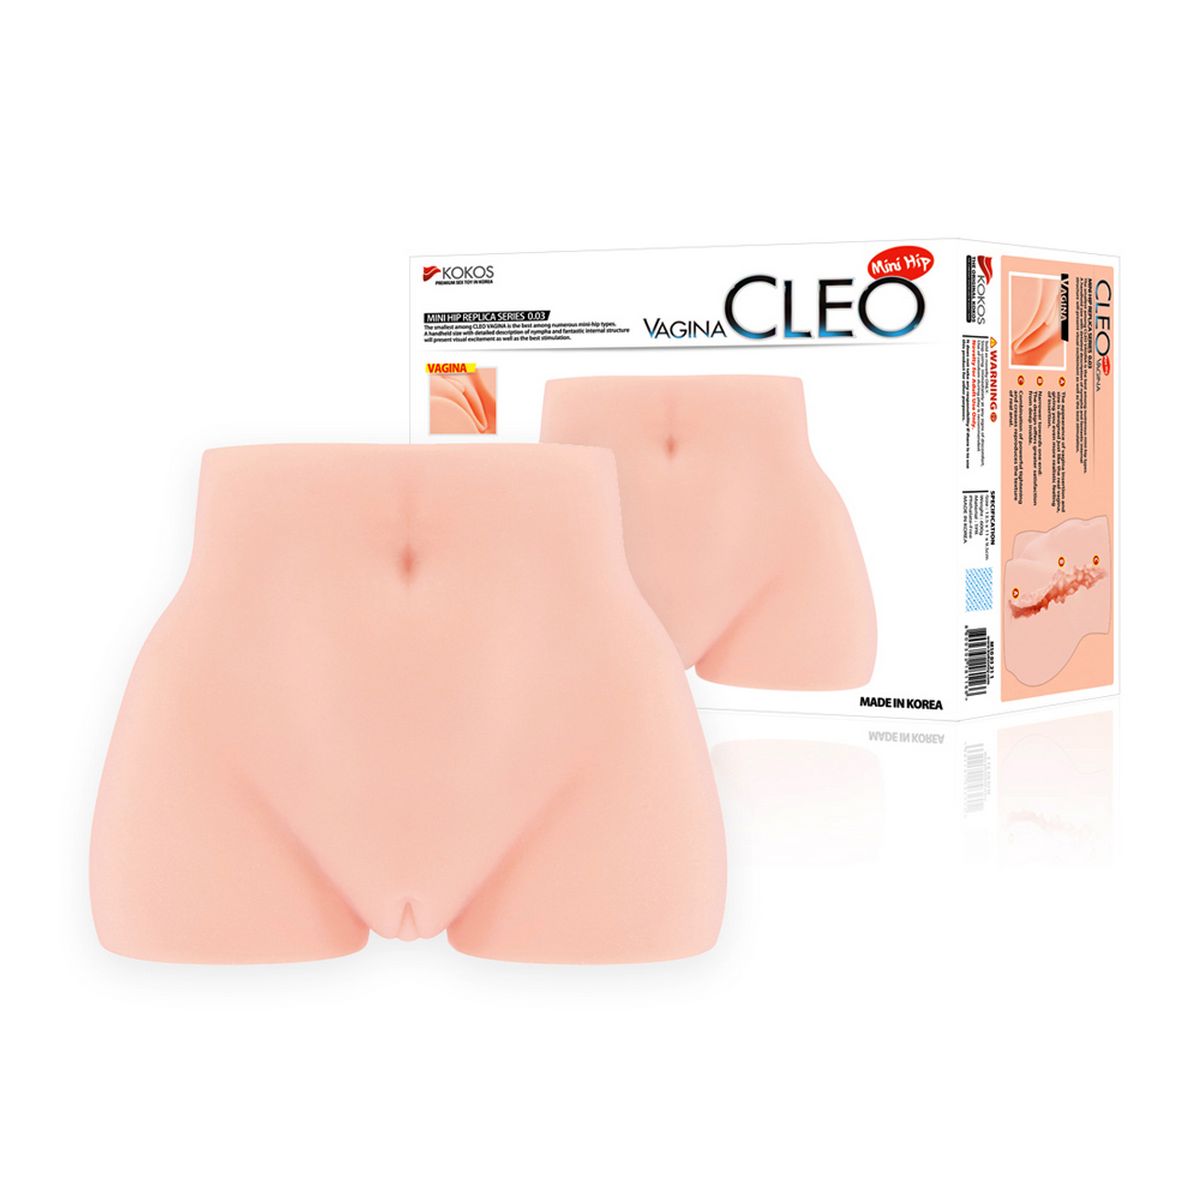 Cleo vagina,   